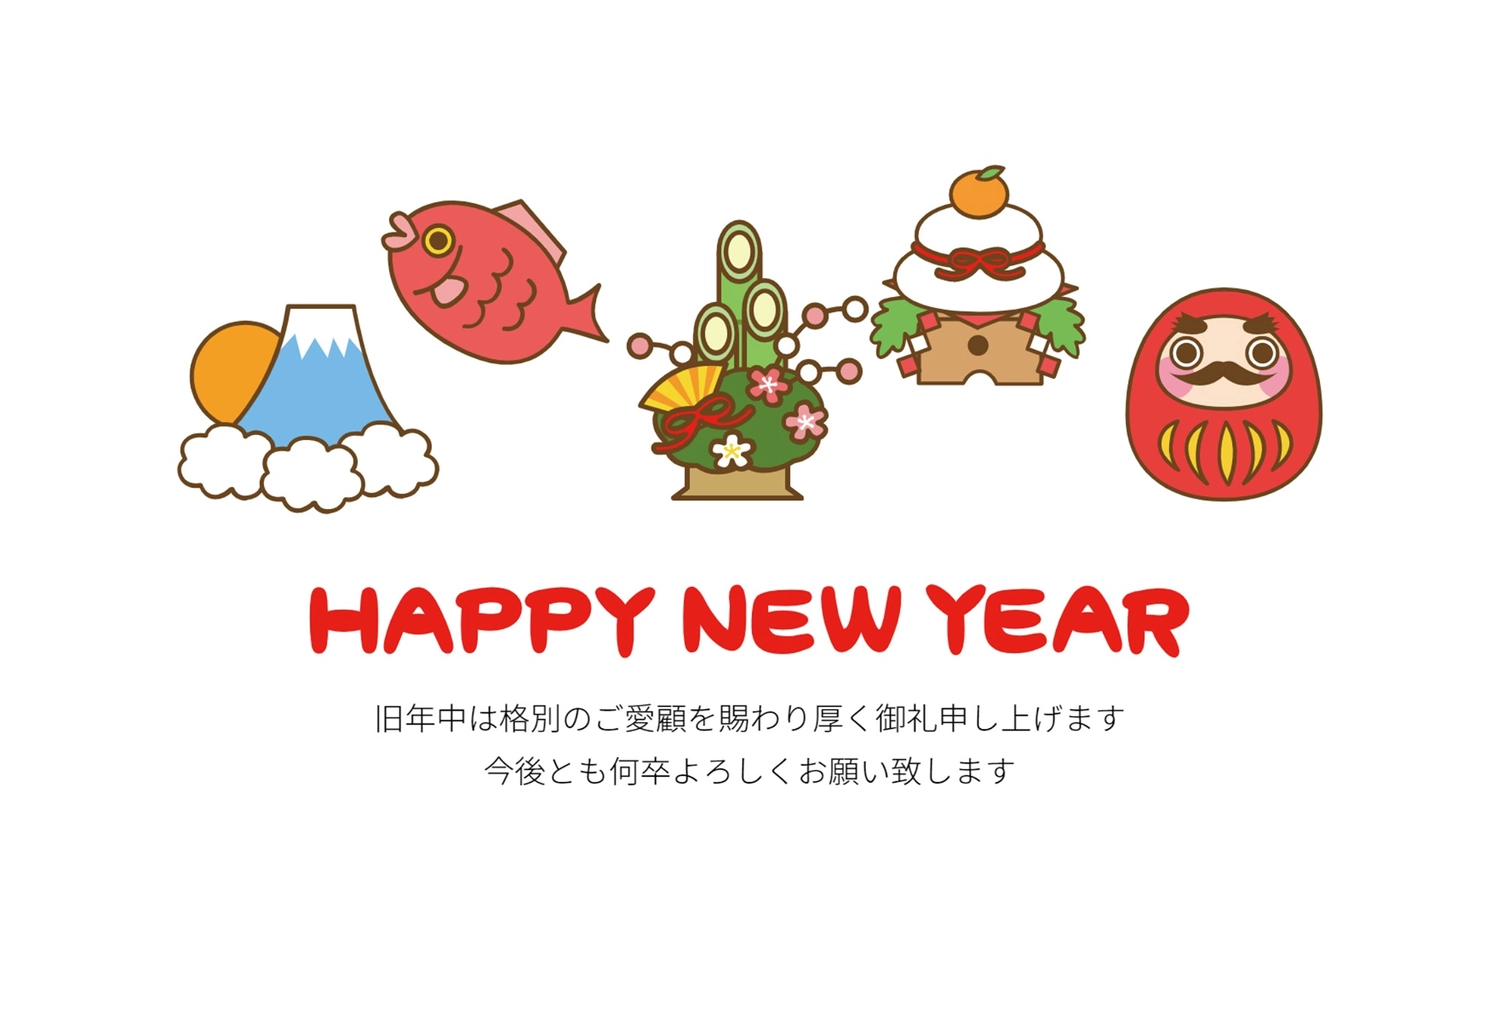 縁起物年賀状, sea bream, margin, Happy New Year, New Year Card template